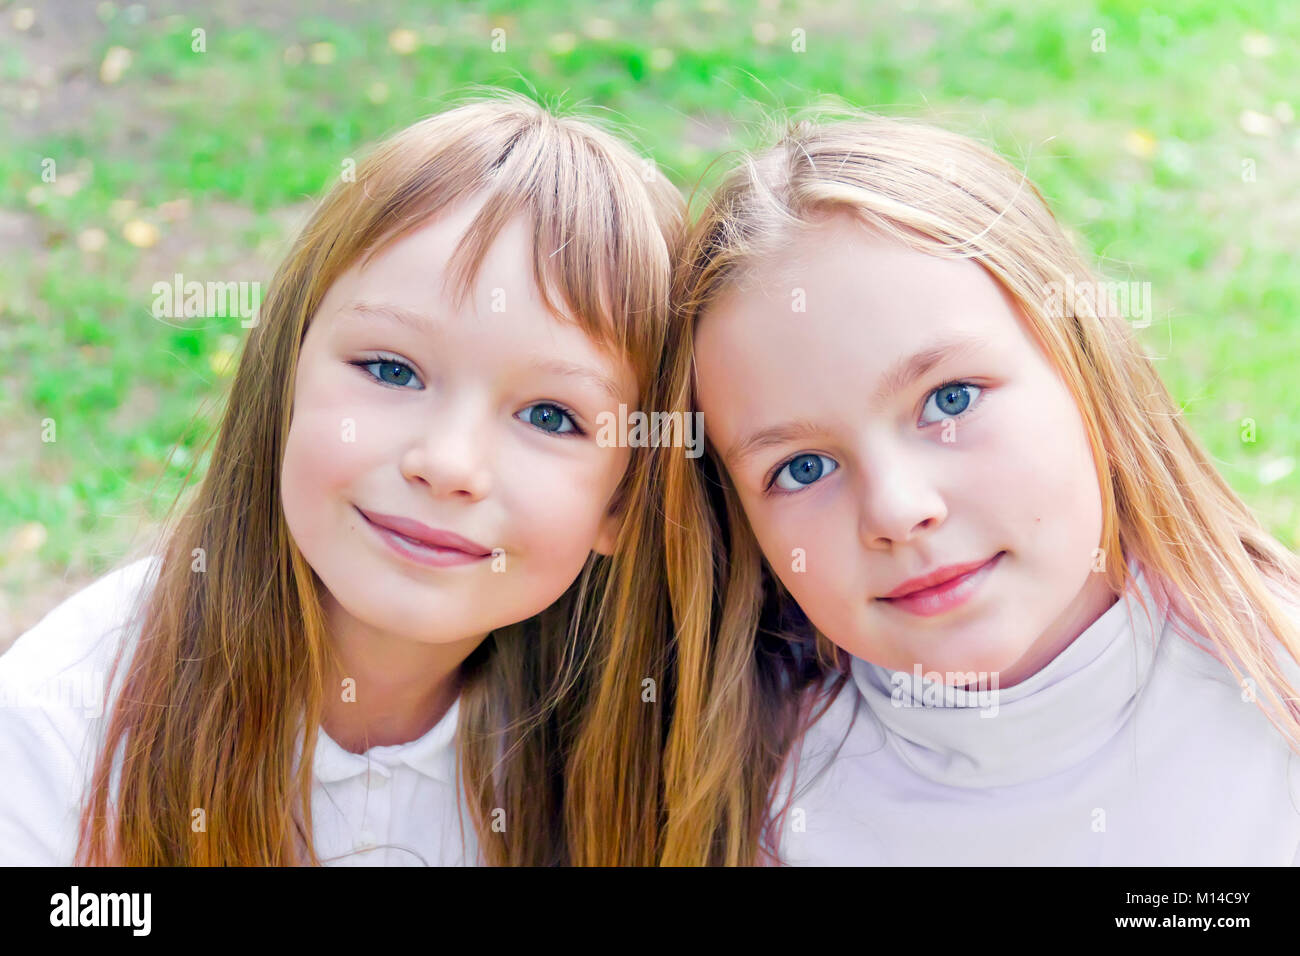 Foto von zwei süßen Mädels mit langen Haaren Stockfoto